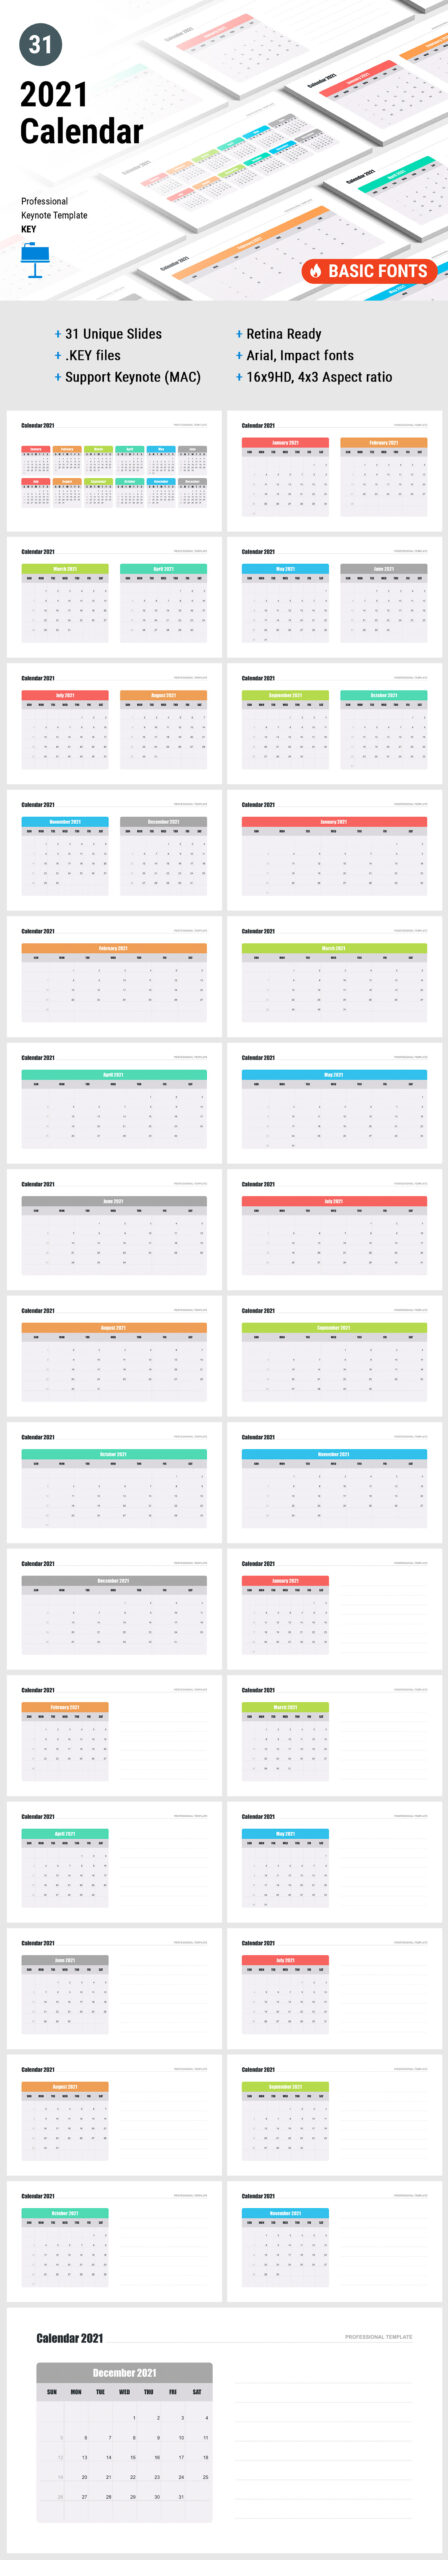 2021 Calendar Template Keynote - Download Now!-2021 Calendar Template